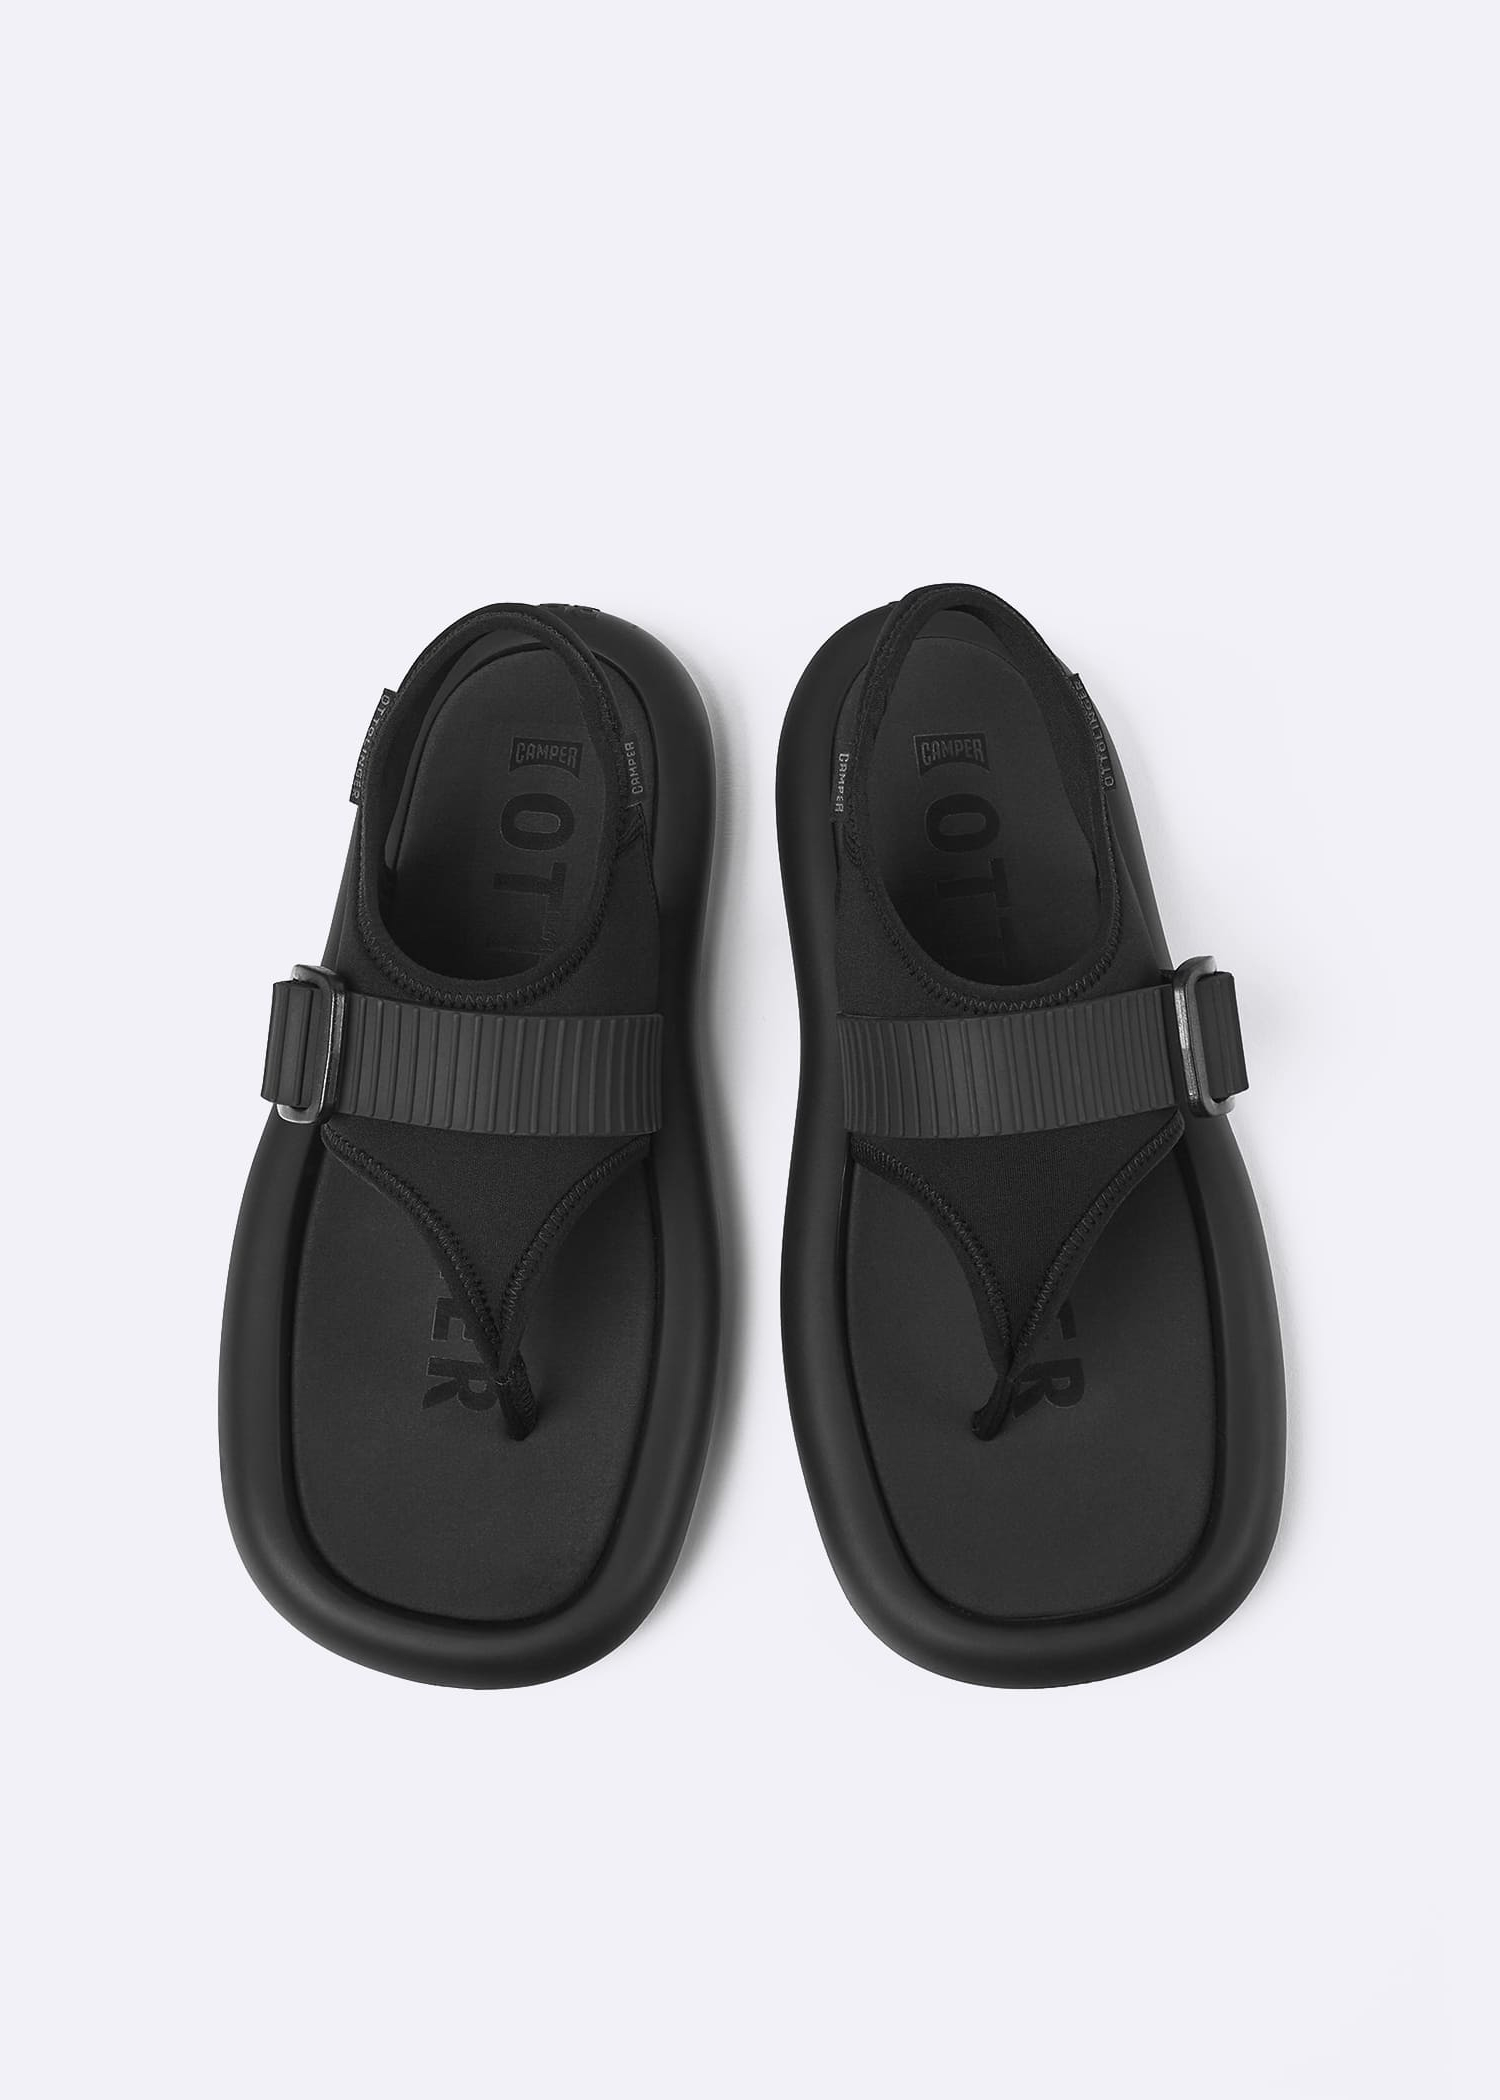 Ottolinger X Camper Aqua Sandals